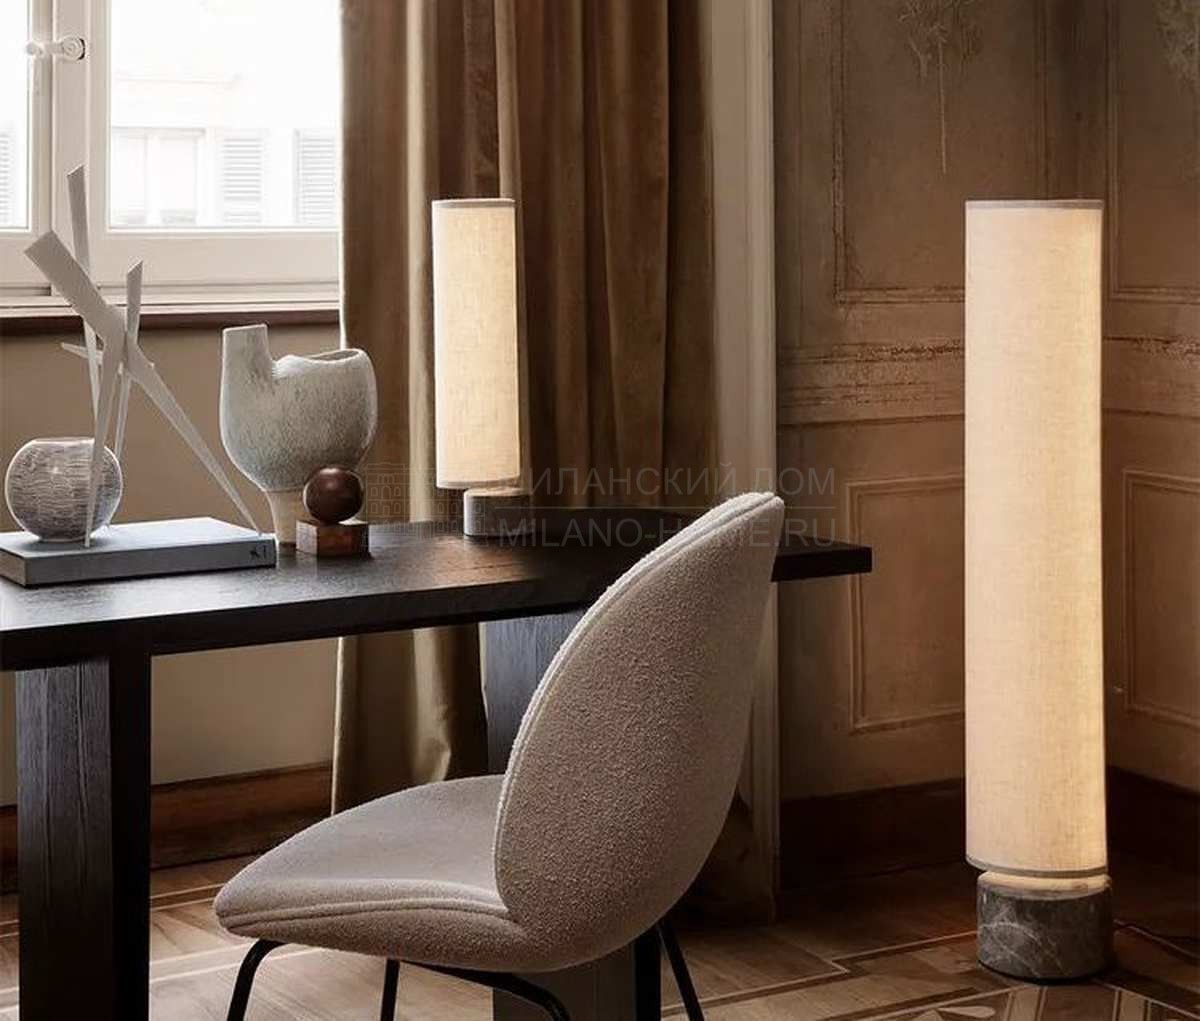 Настольная лампа Unbound table lamp из Дании фабрики GUBI